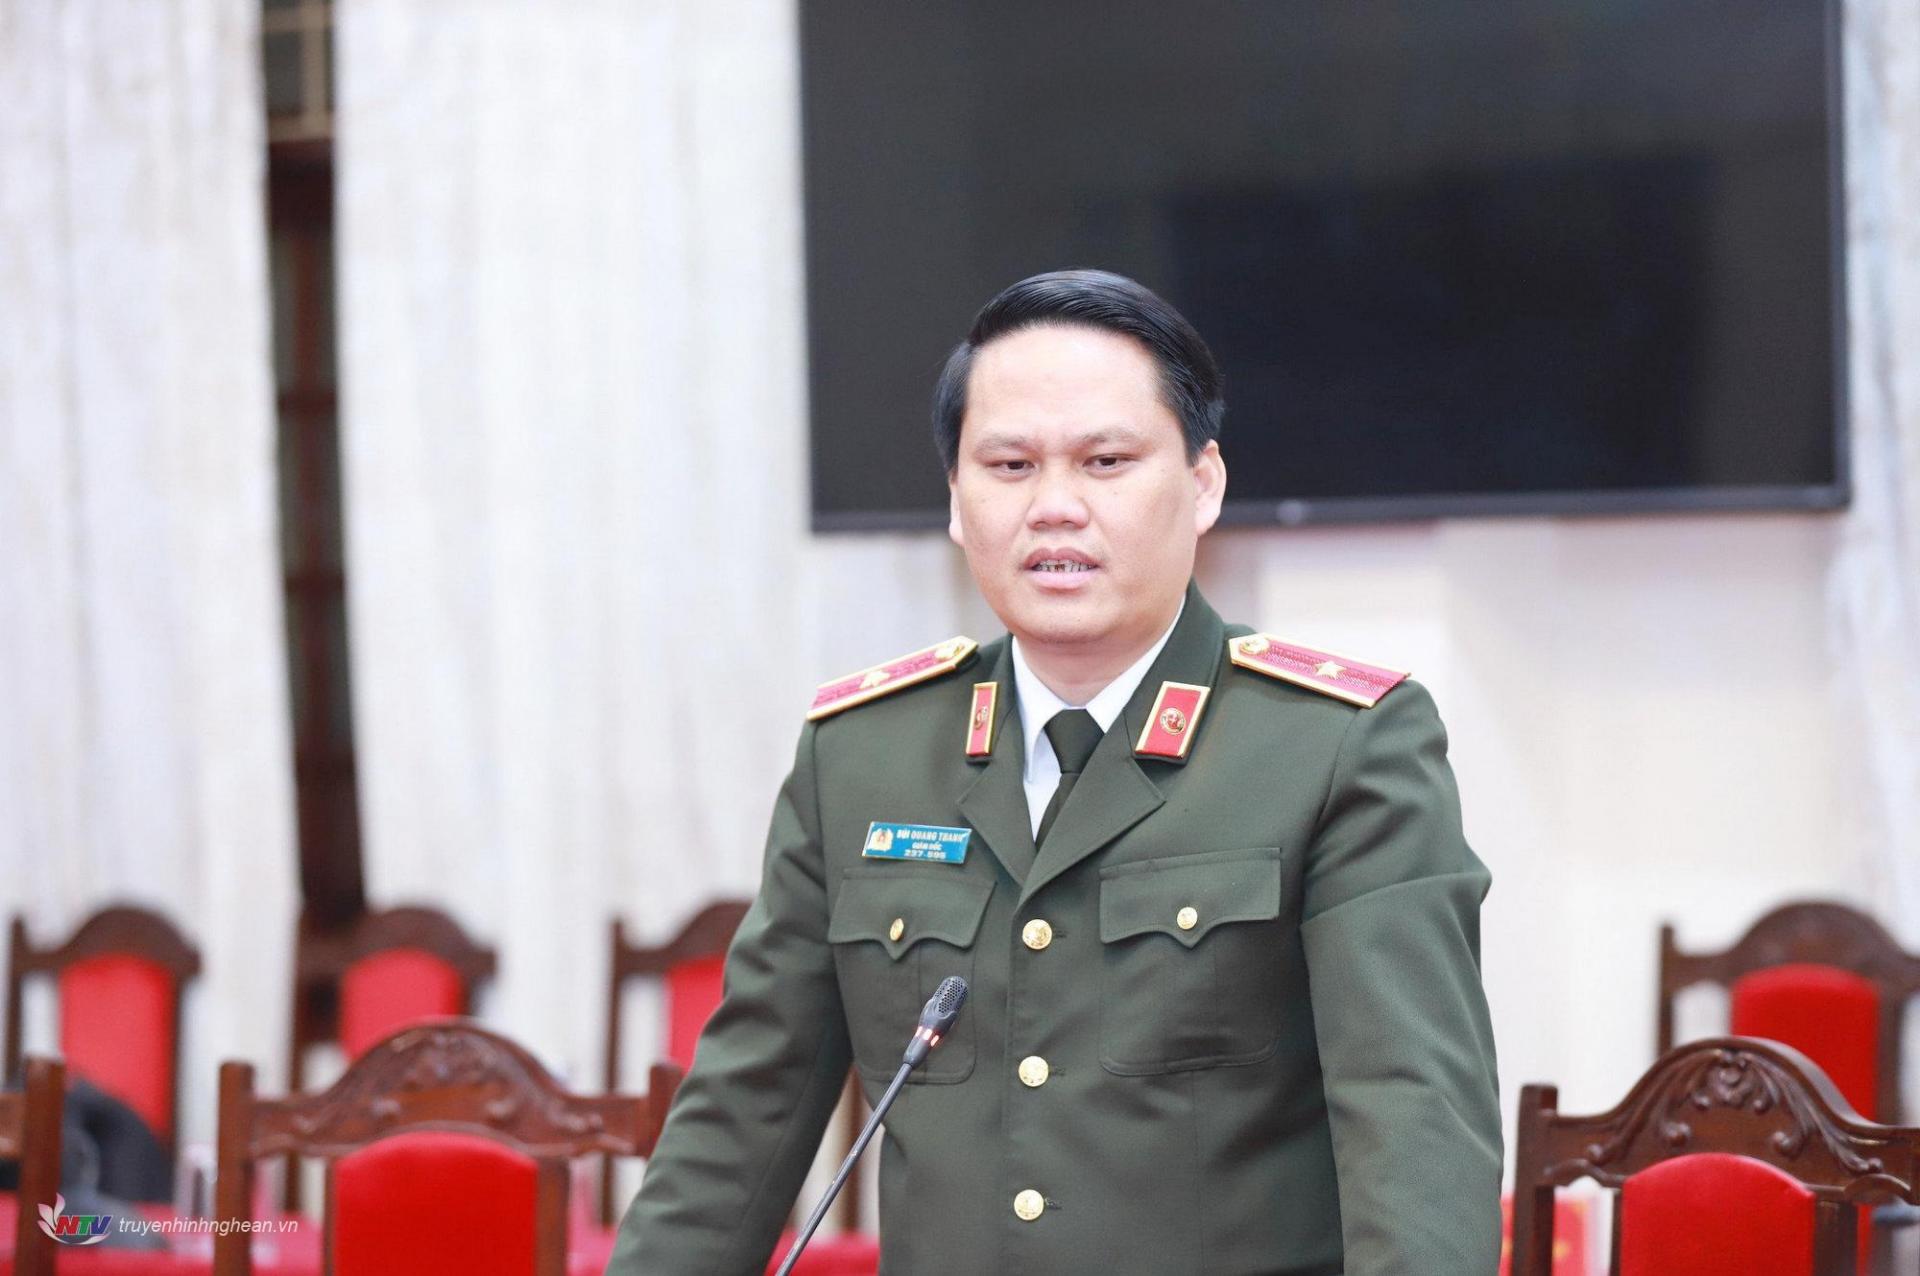 Thiếu tướng Bùi Quang Thanh - Ủy viên Ban Thường vụ Tỉnh ủy, Giám đốc Công an tỉnh Nghệ An phát biểu.